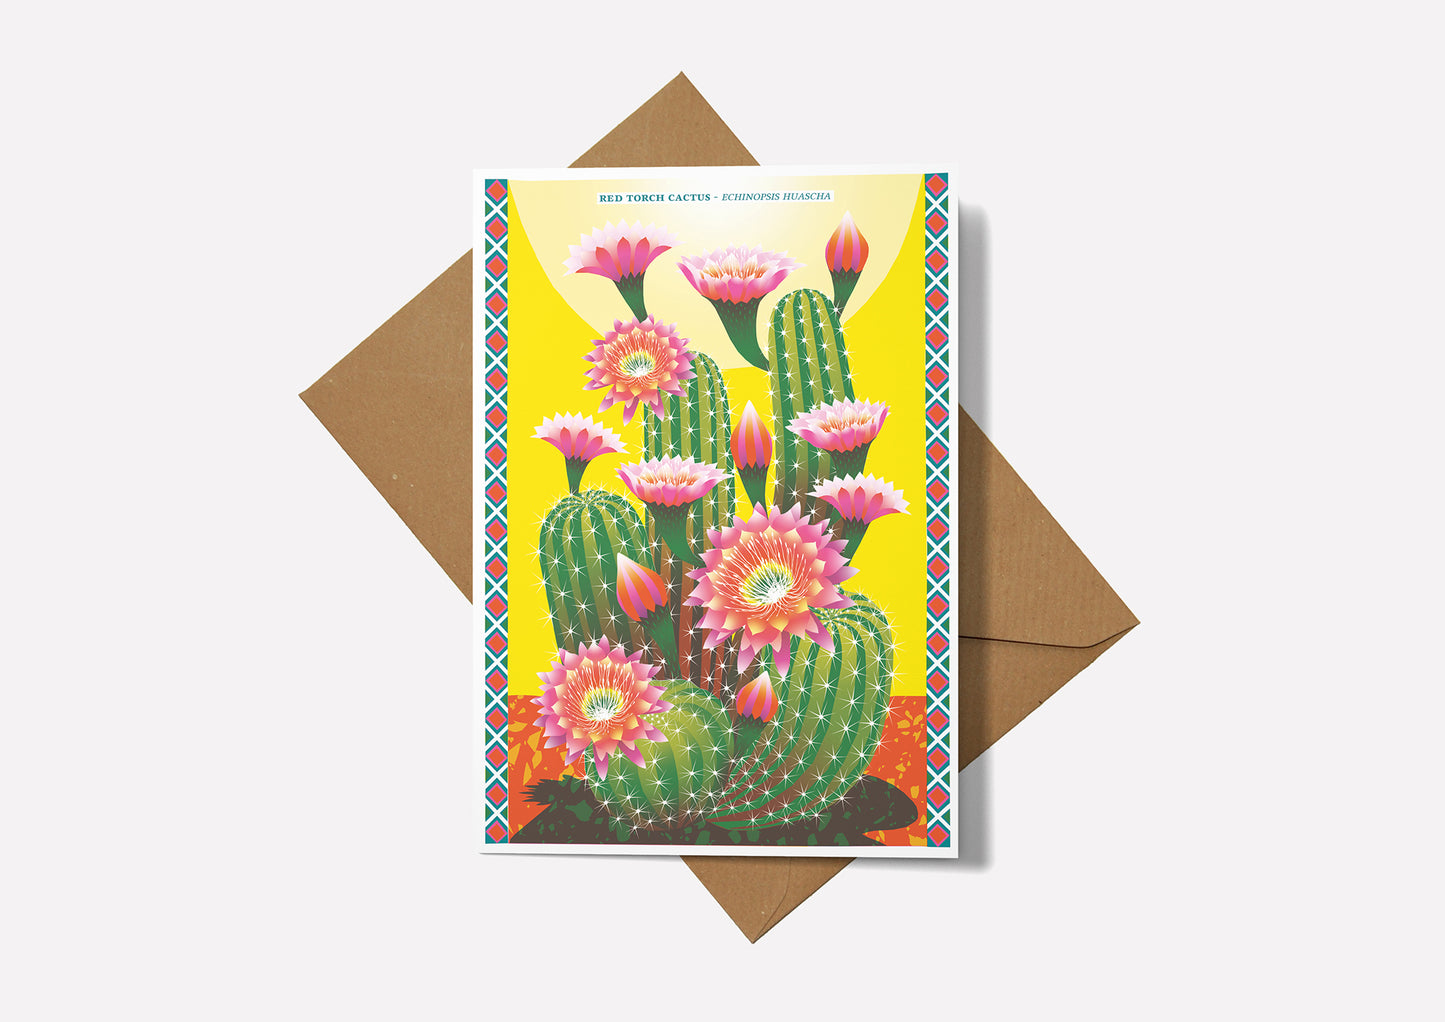 Cactus Greetings Card